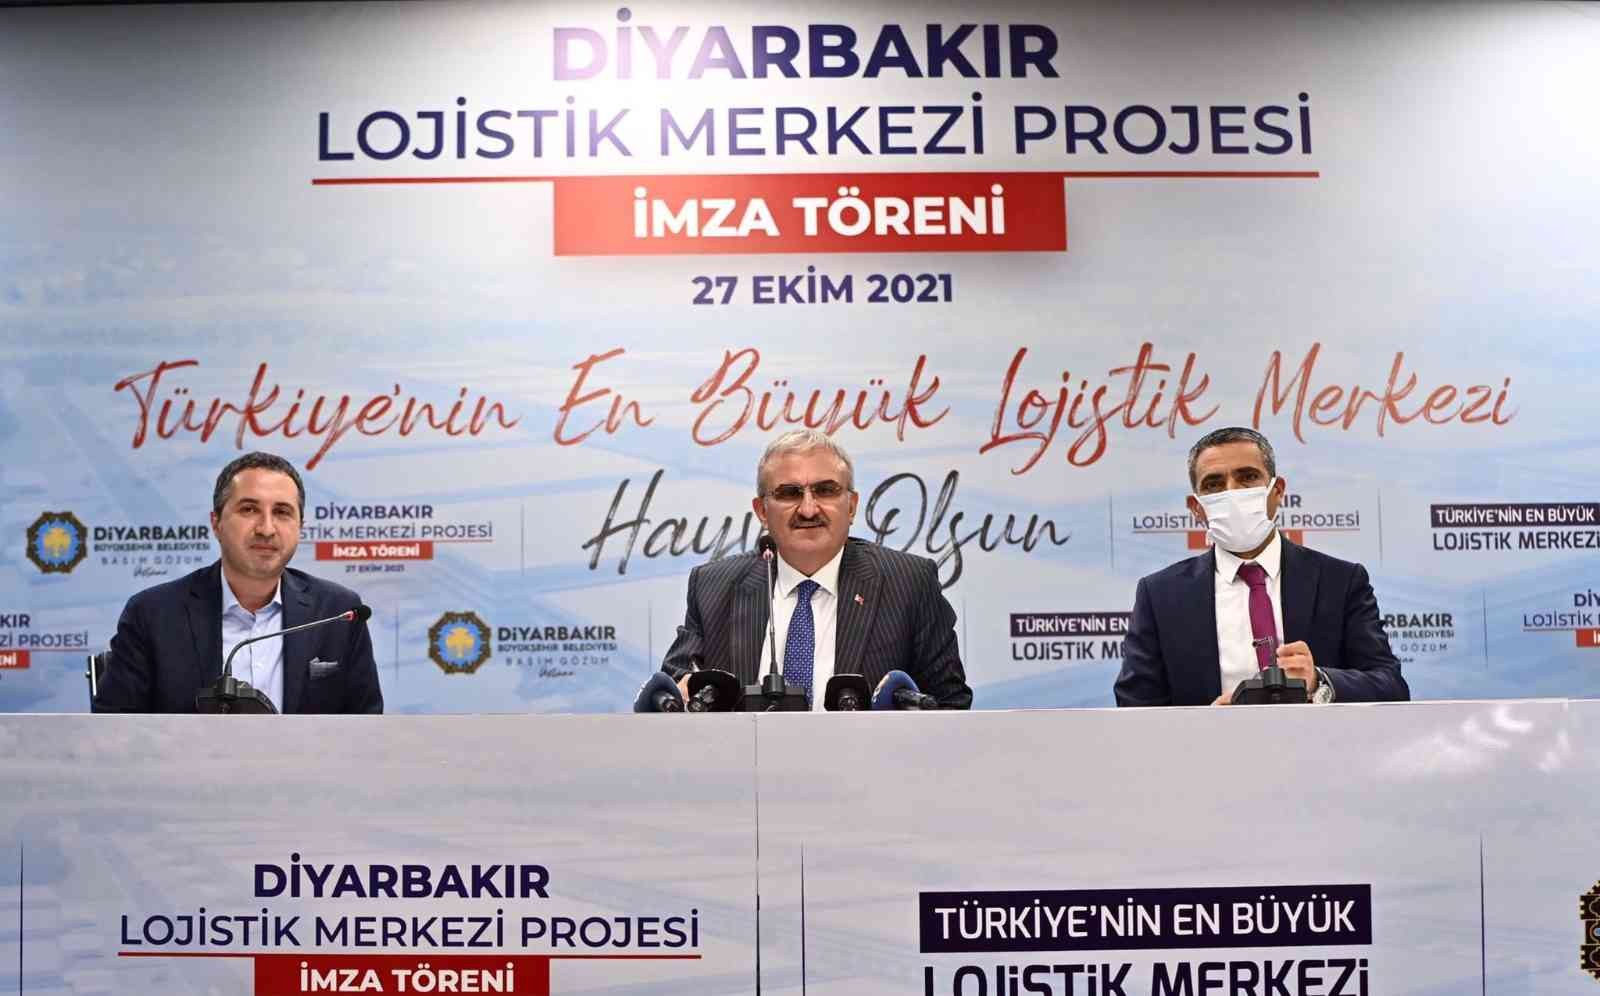 Diyarbakır’da Lojistik Merkezi için imzalar atıldı